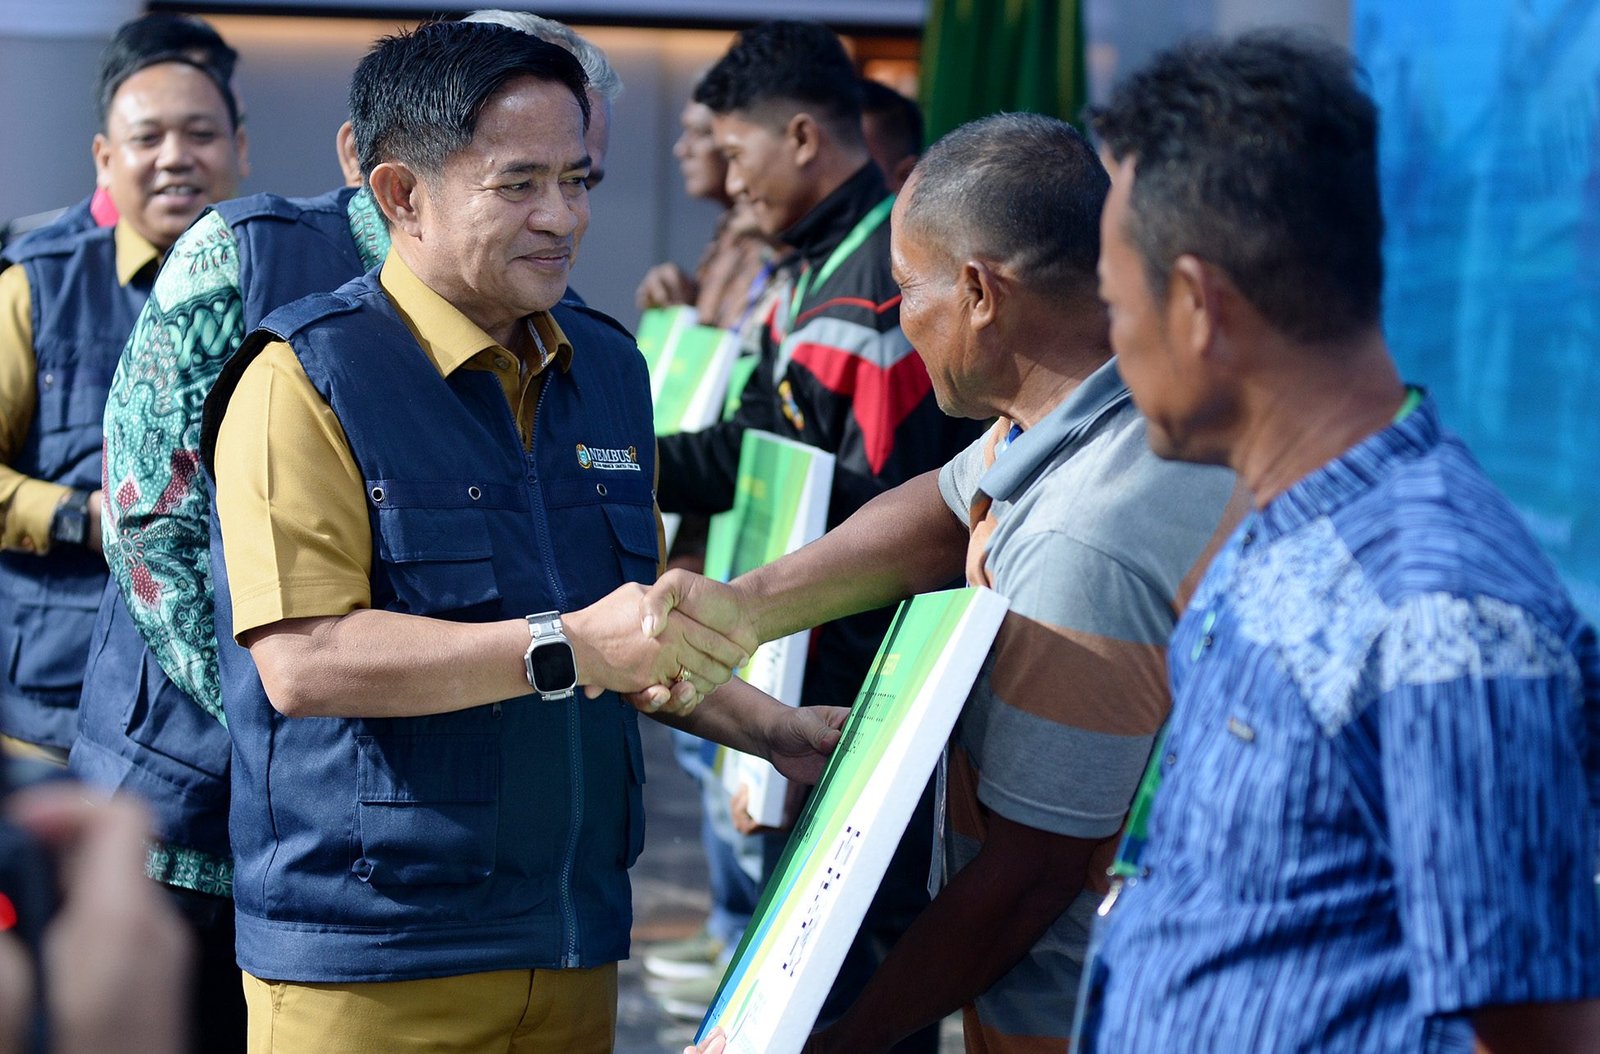 Pj Gubernur Sumatera Utara (Sumut) Hassanudin meluncurkan Program Nelayan Membangun Sumatera Utara Hebat (Nembush) serta menyerahkan asuransi secara simbolis kepada nelayan di Aula Raja Inal Siregar 